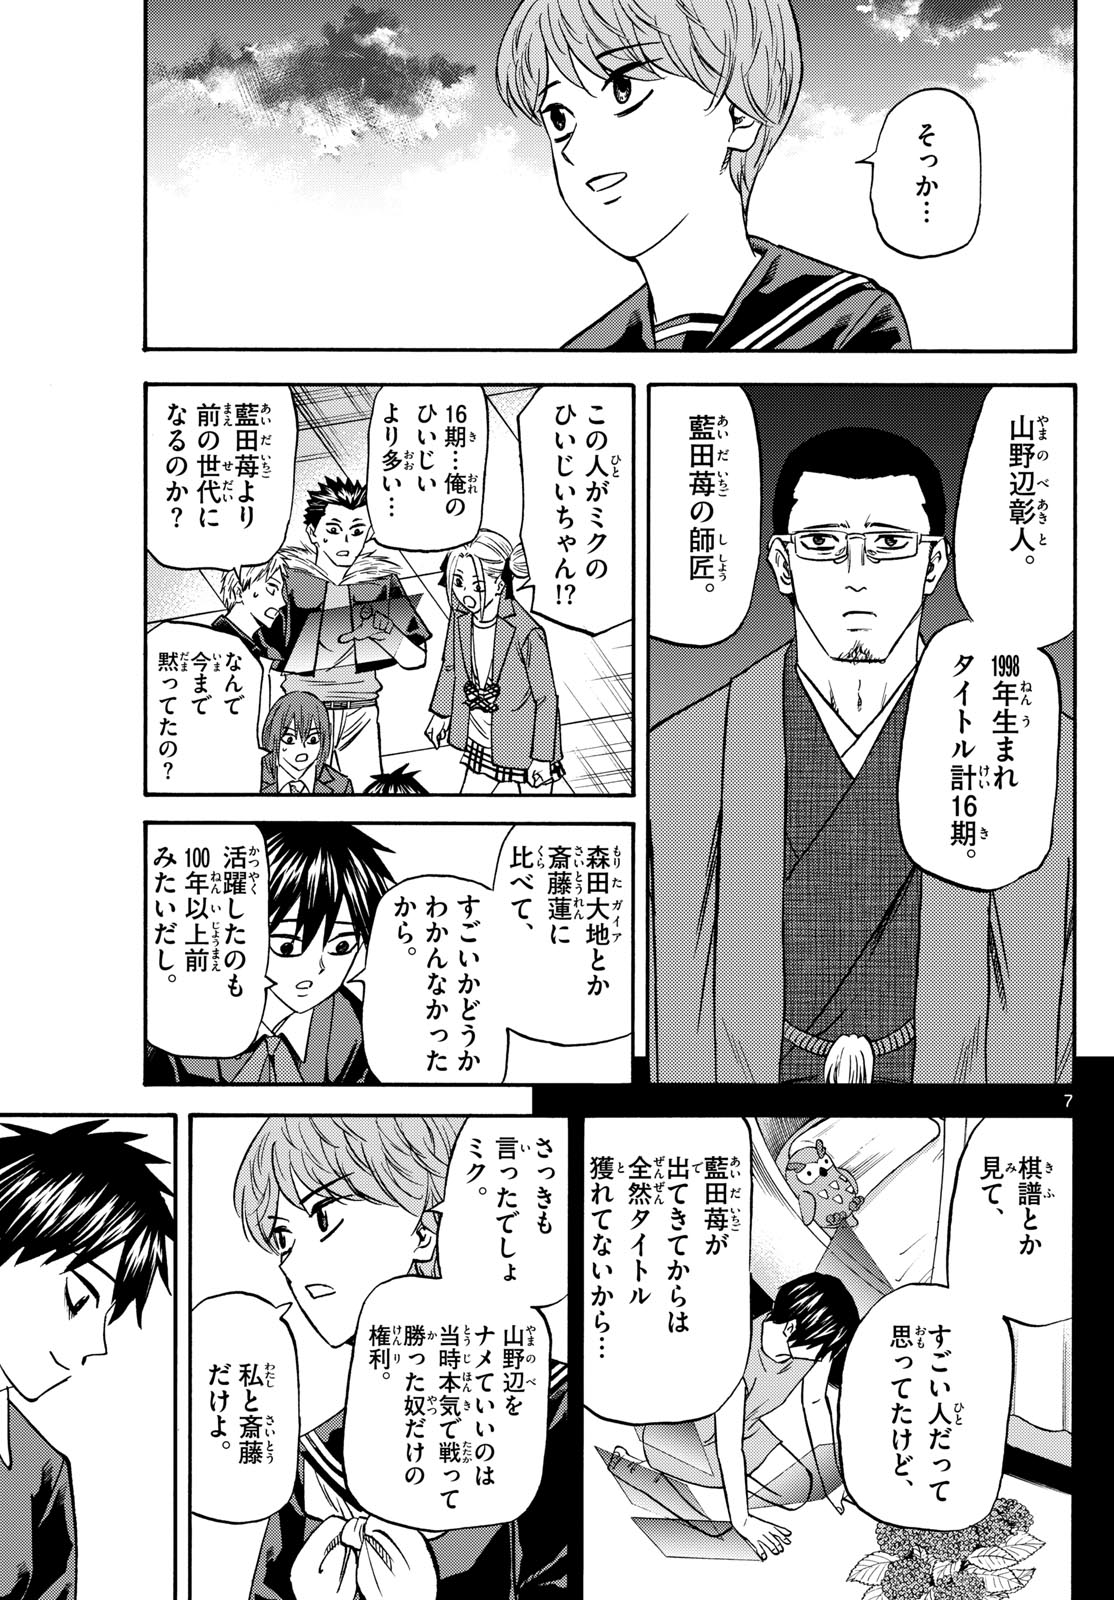 Tatsu to Ichigo - Chapter 188 - Page 7